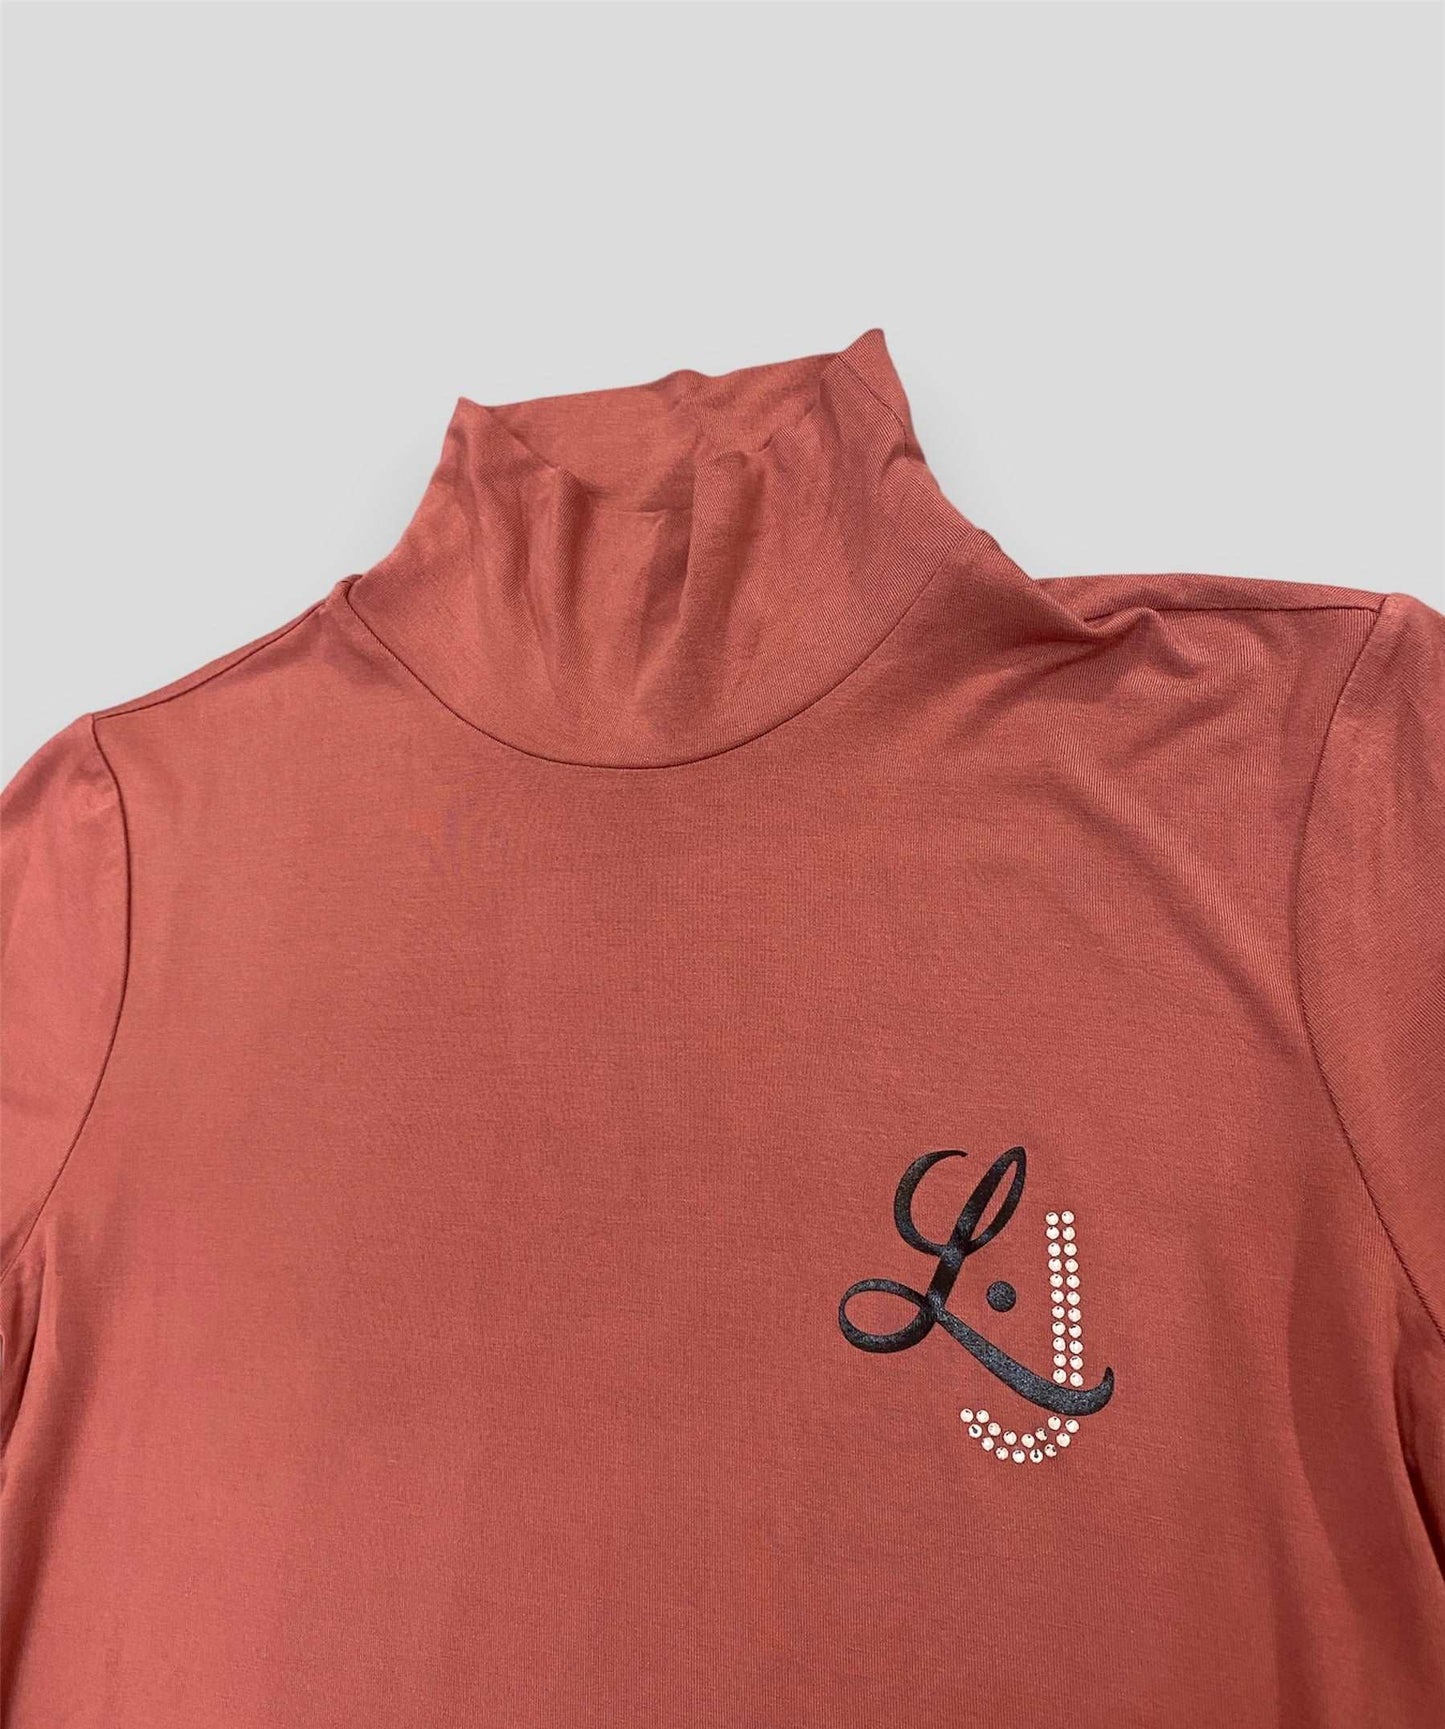 Lupetto con logo liu jo rosa - Premium MAGLIE from LIU JO - Just €65! Shop now at Amaltea